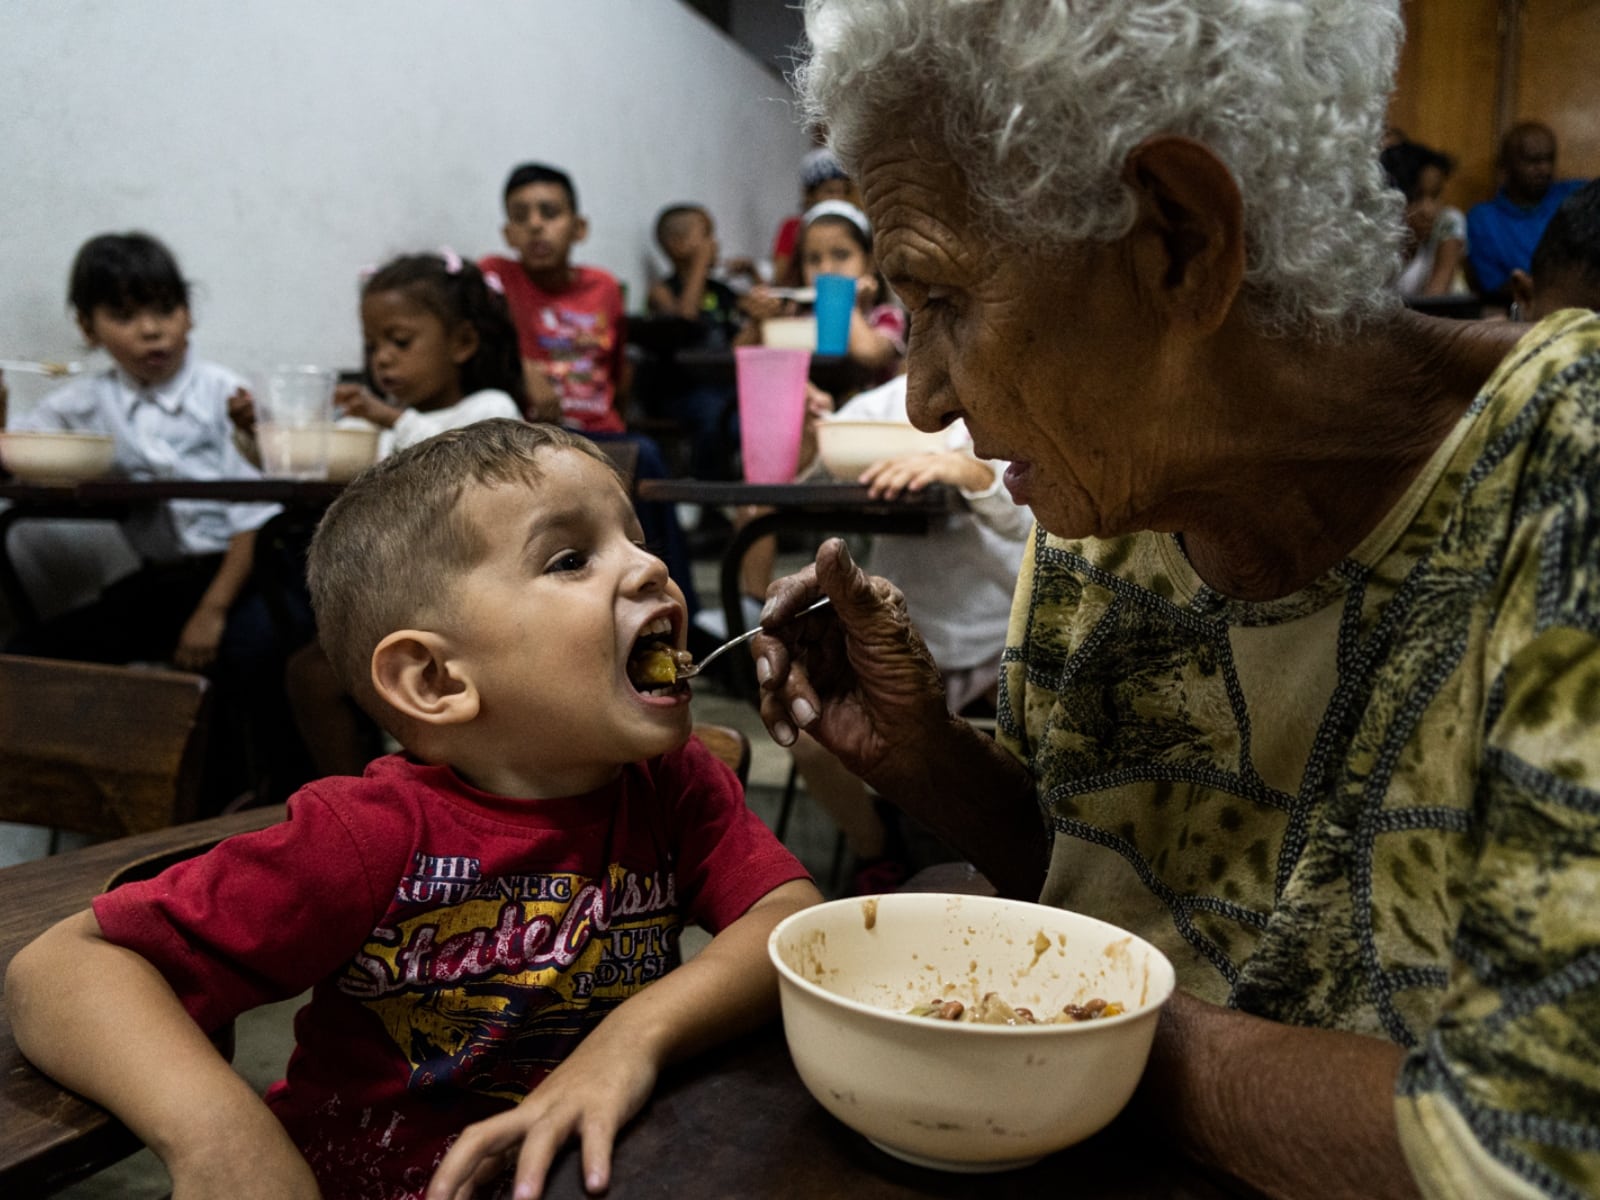 La fórmula que diseñó un venezolano para niños con desnutrición - El Diario